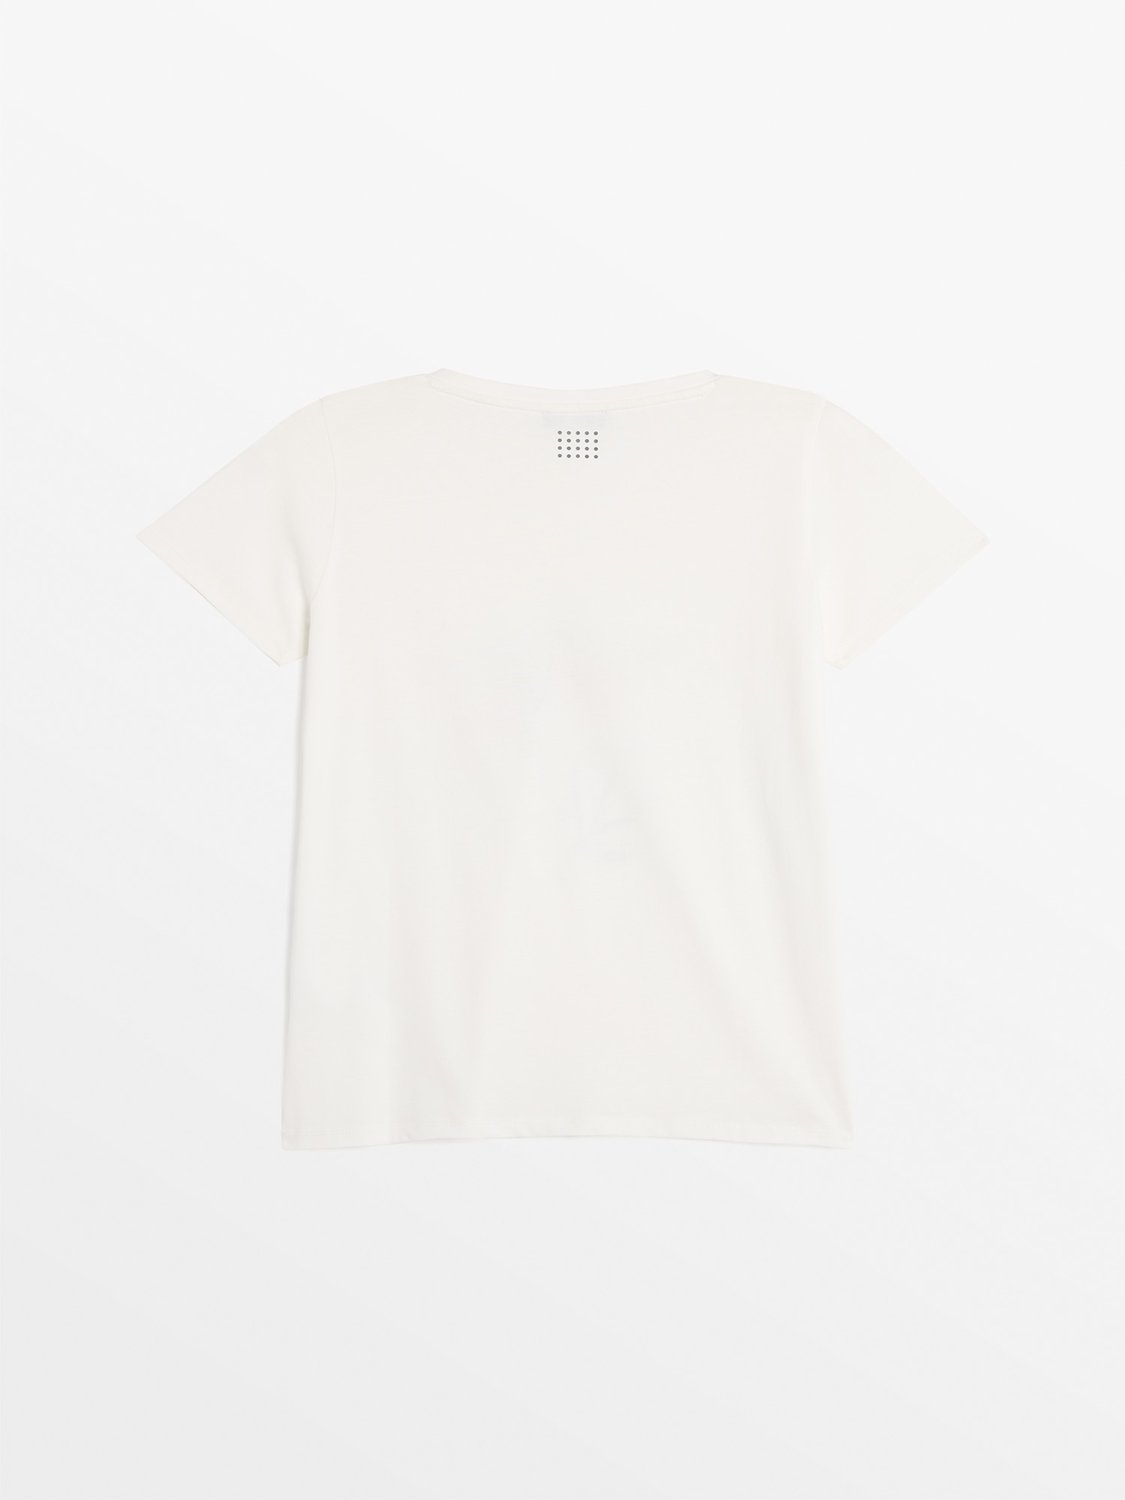 Tee Shirt Femme Coton Biologique Blanc